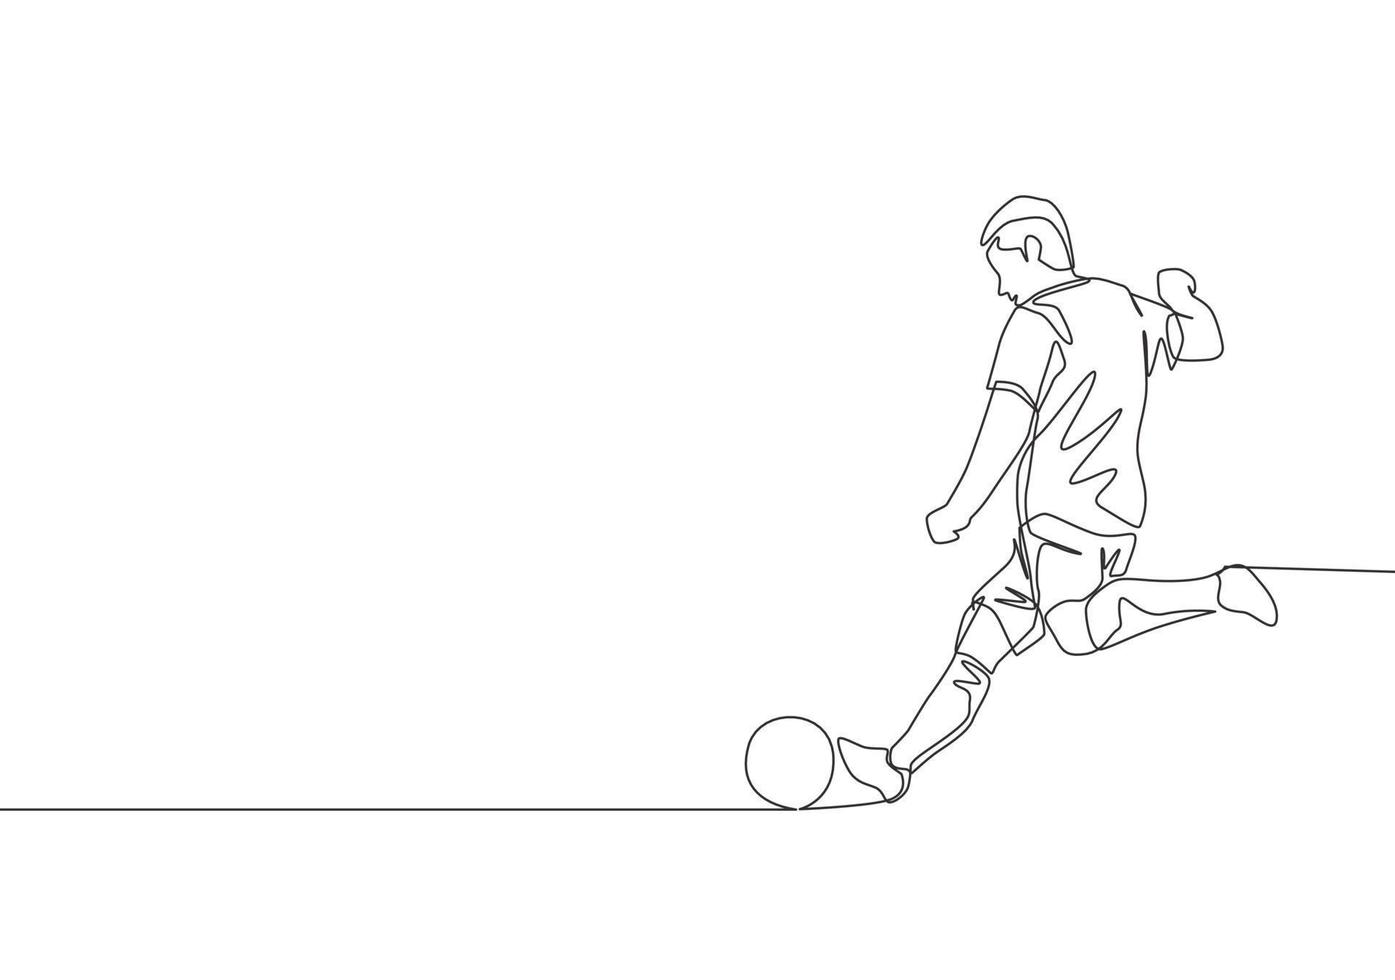 een single lijn tekening van jong energiek Amerikaans voetbal spits nemen een vrij trap schieten Bij de spel. voetbal bij elkaar passen sport- concept. doorlopend lijn trek ontwerp vector illustratie